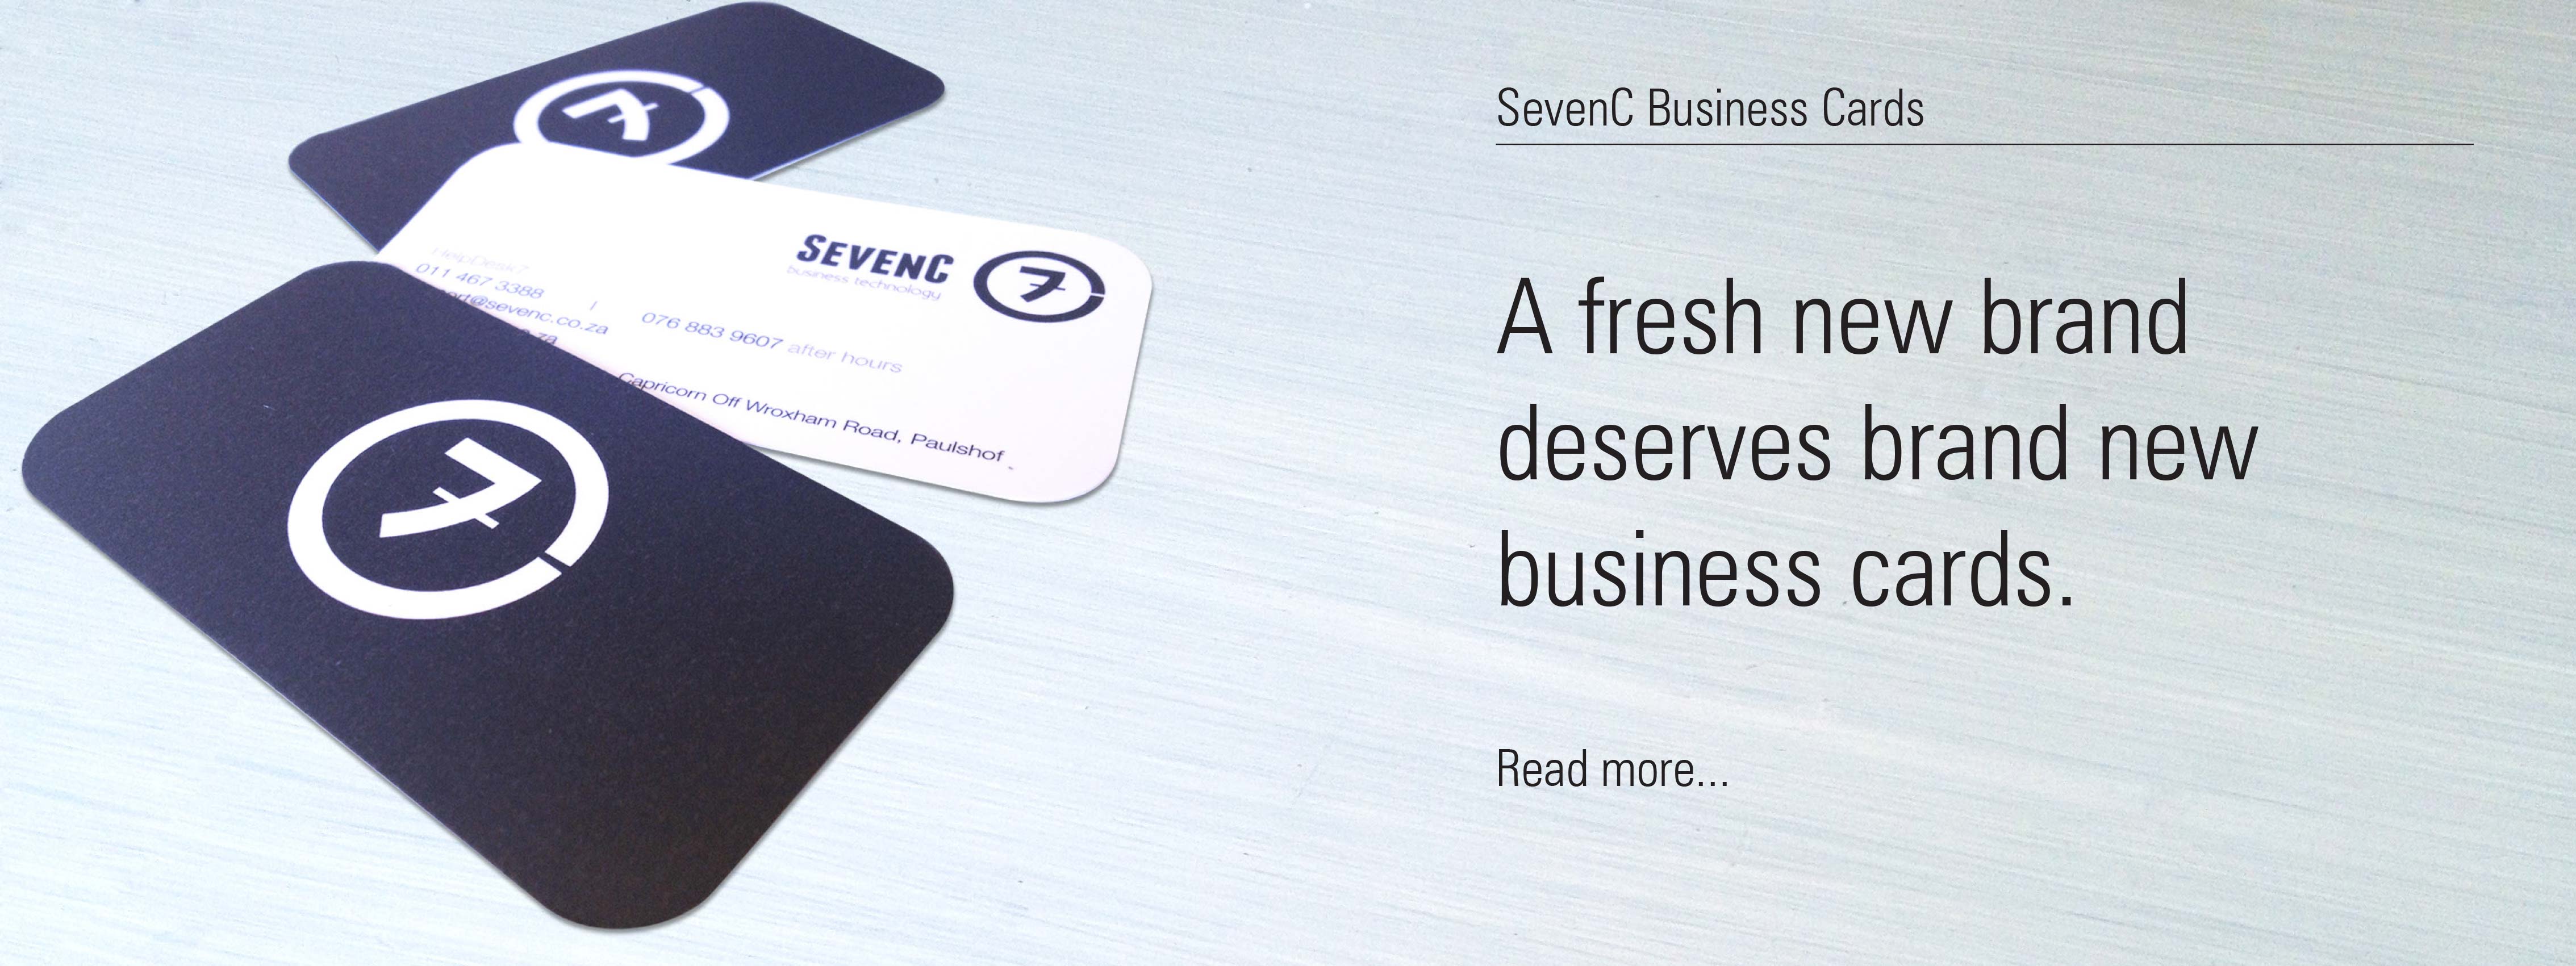 SevenC Business Cards